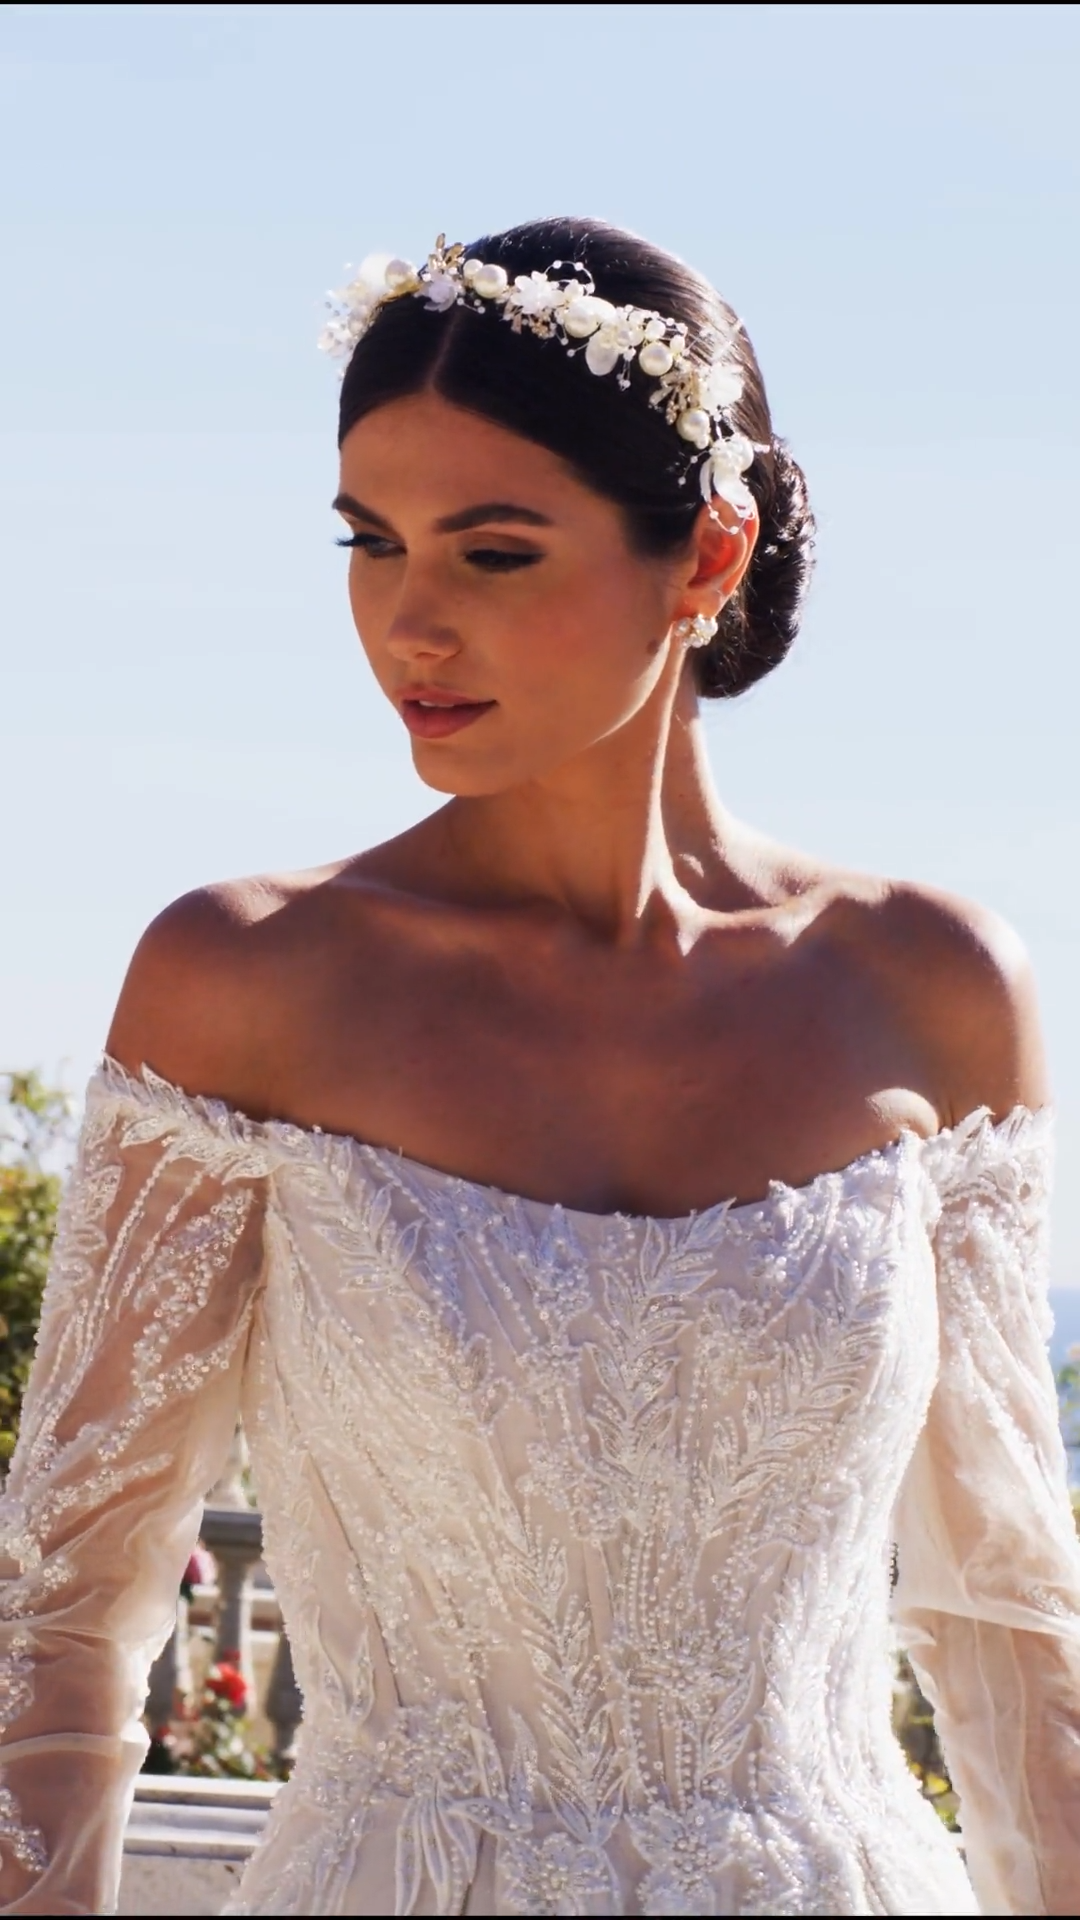 ValStefani CALYPSO couture high quality silk wedding dresses